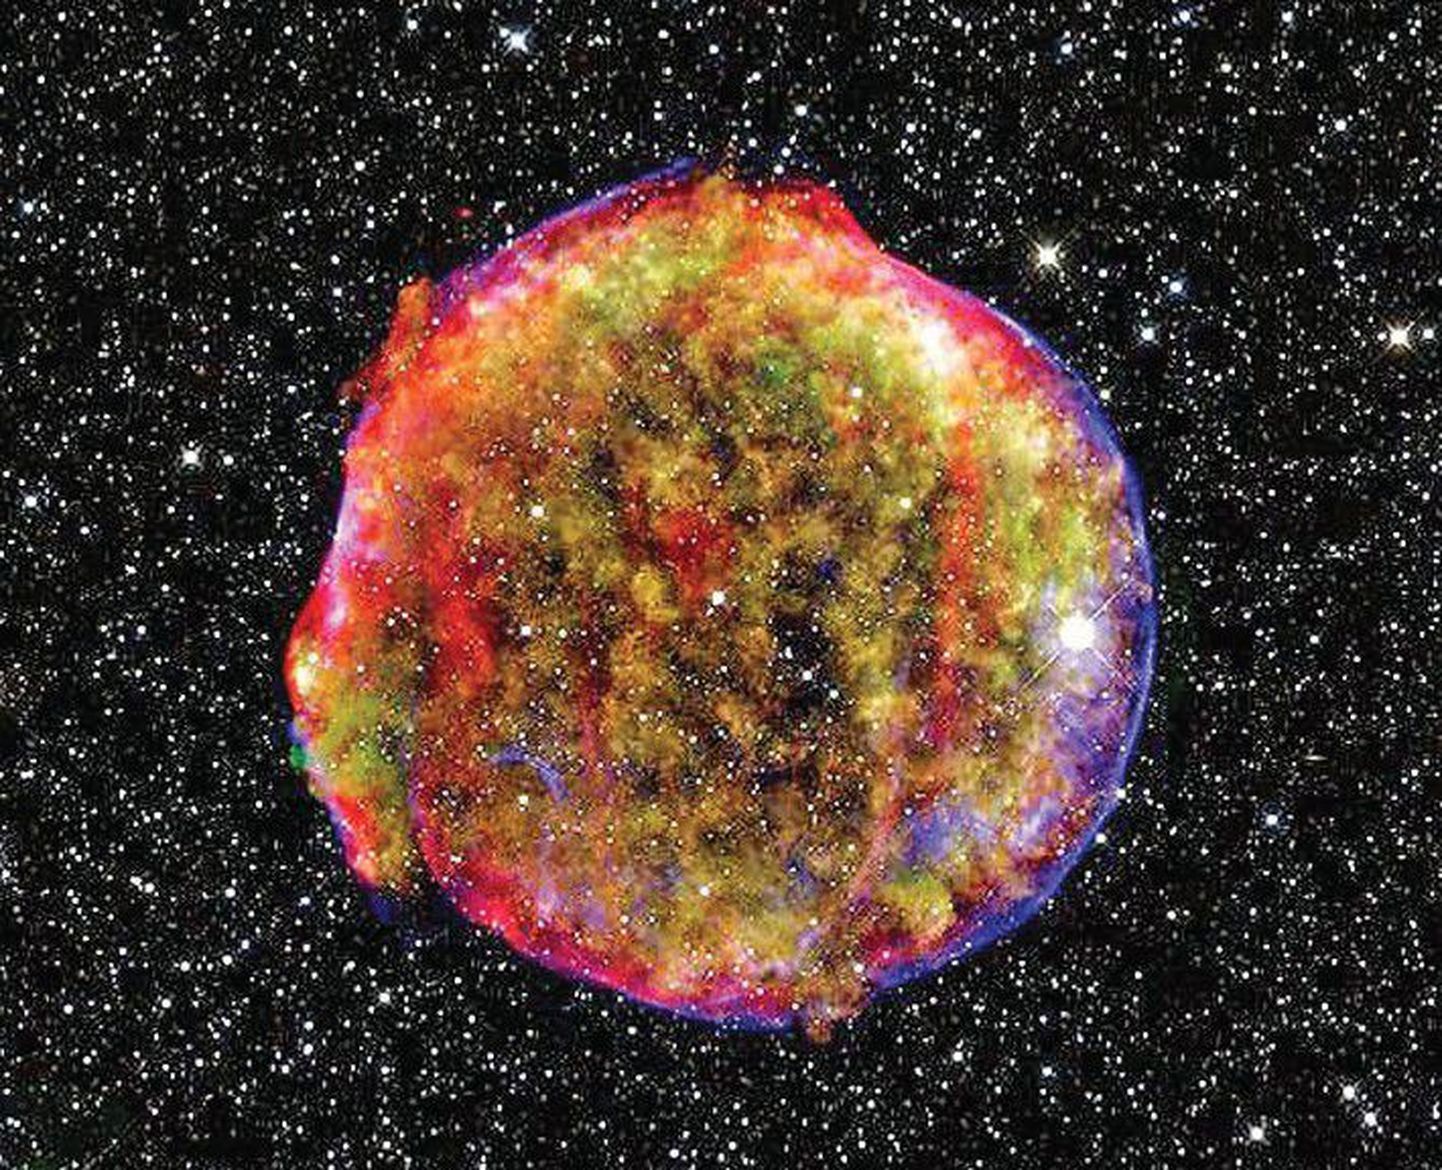 Сверхновая звезда, исследование которой в итоге привело троих ученых к Нобелевской премии по физике.